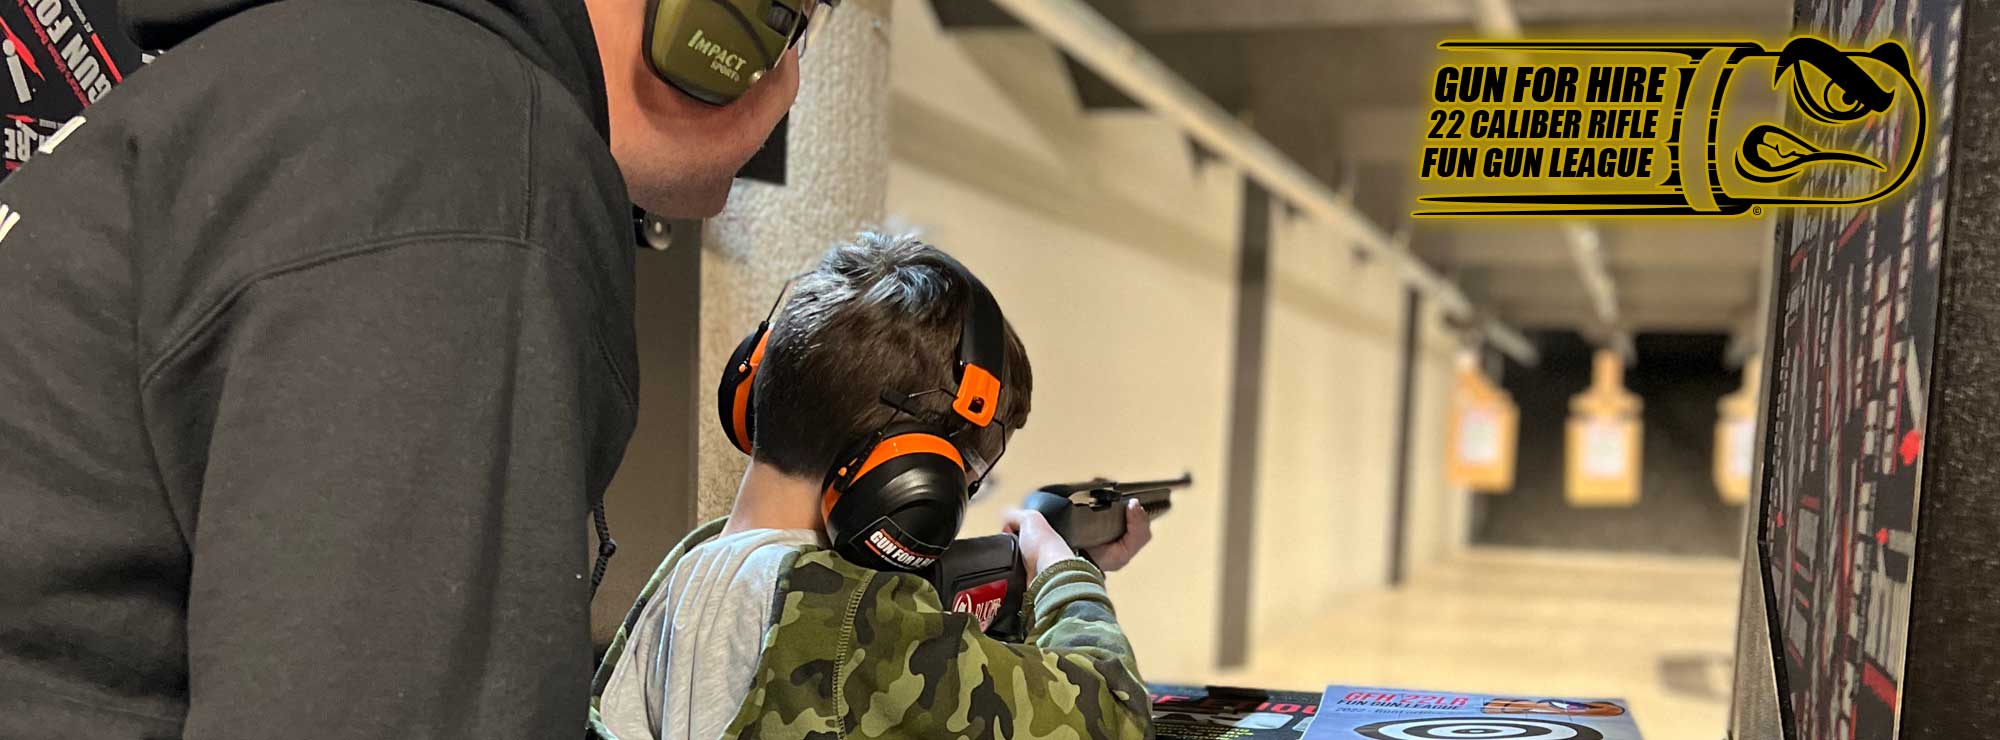 22 fun gun leage boy shooting - Gun For Hire 22lr league